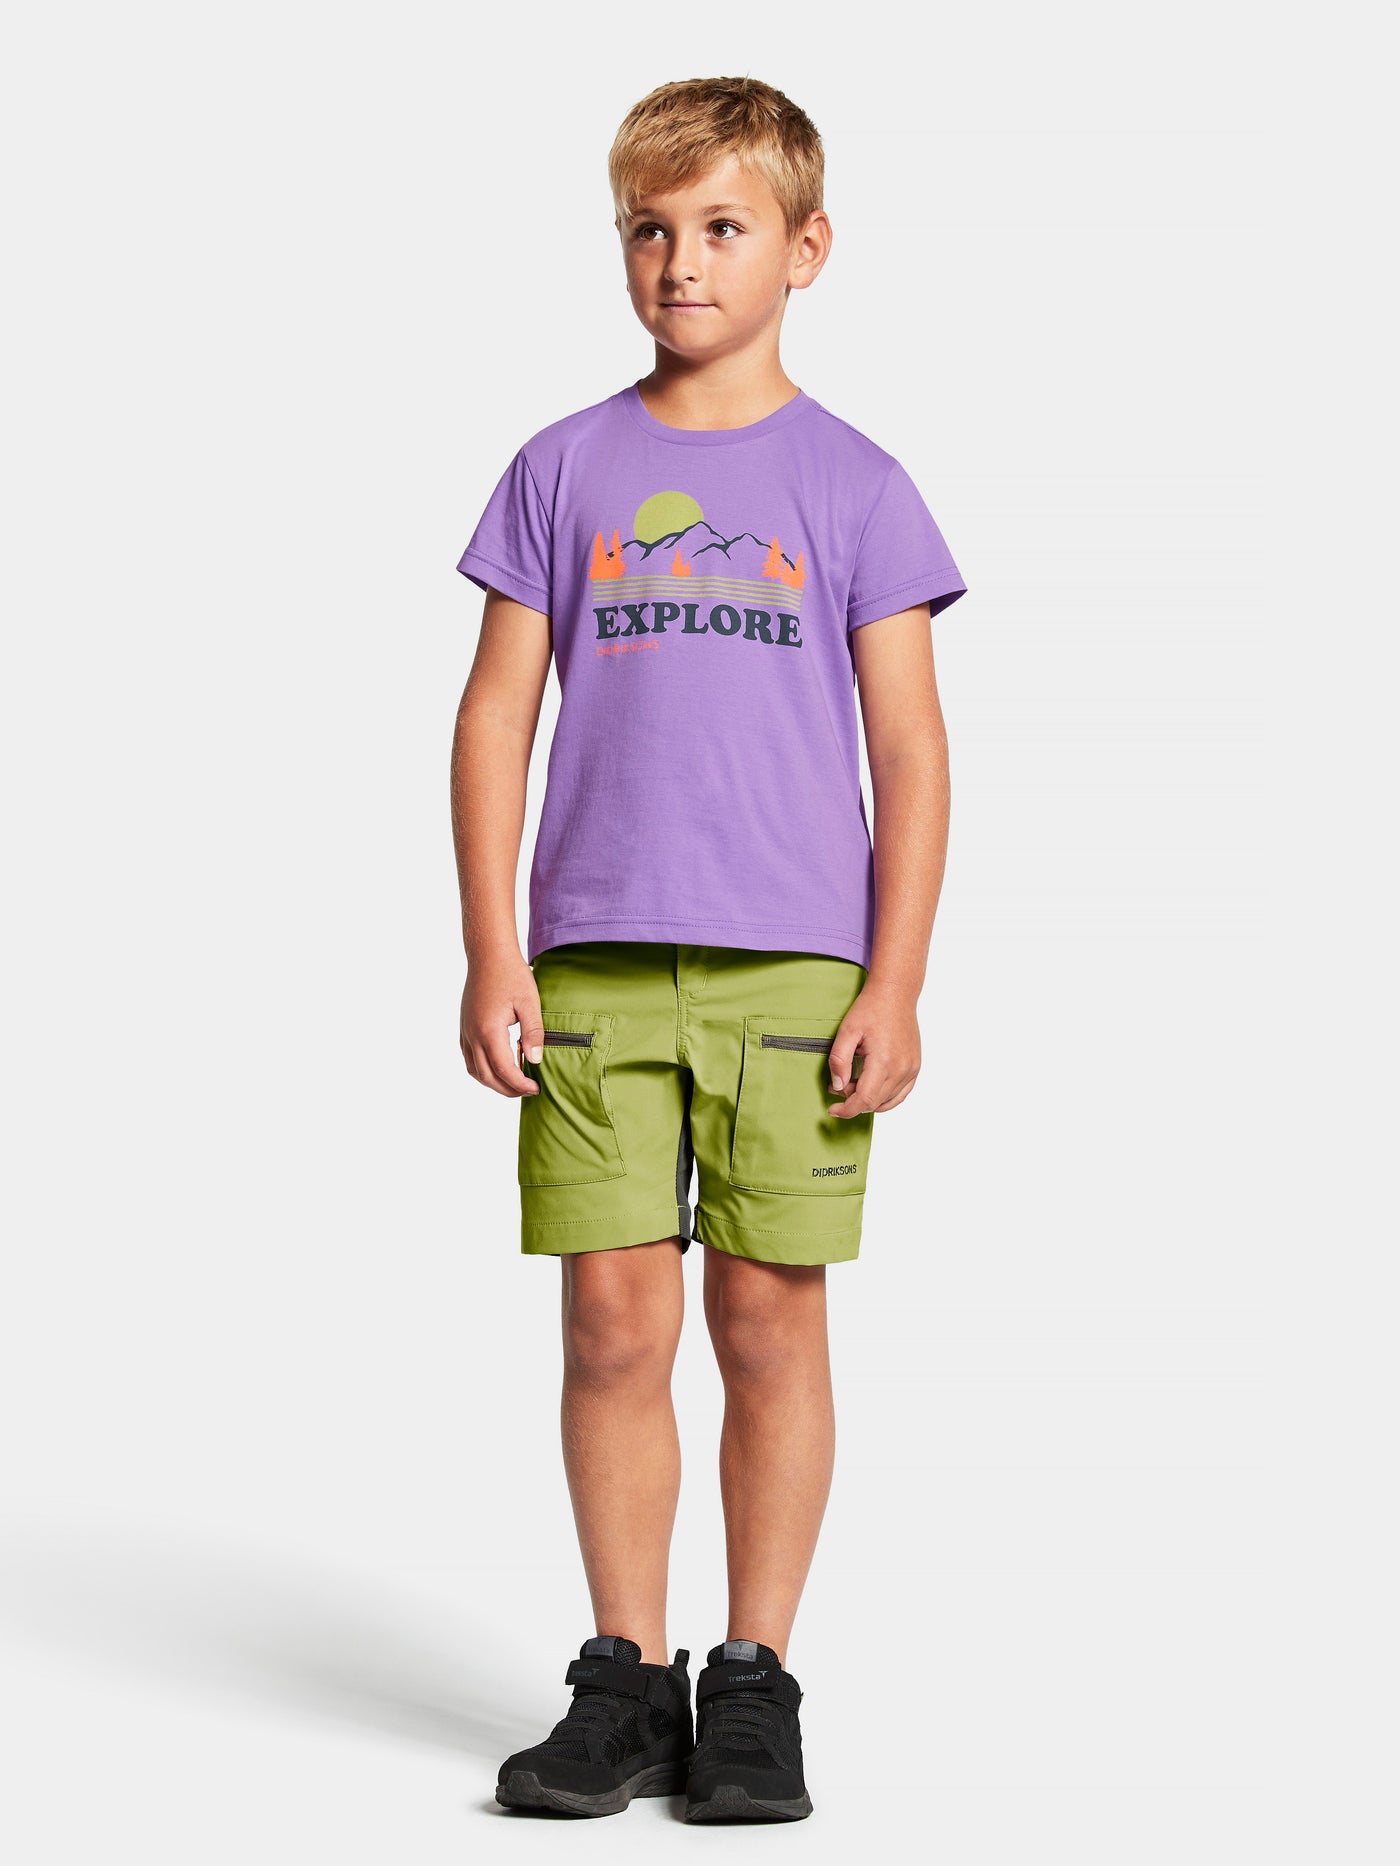 Didriksonsin lasten ja nuorten Mynta logo t-paita liilassa sävyssä lapsen päällä edestä kauempaa kuvattuna